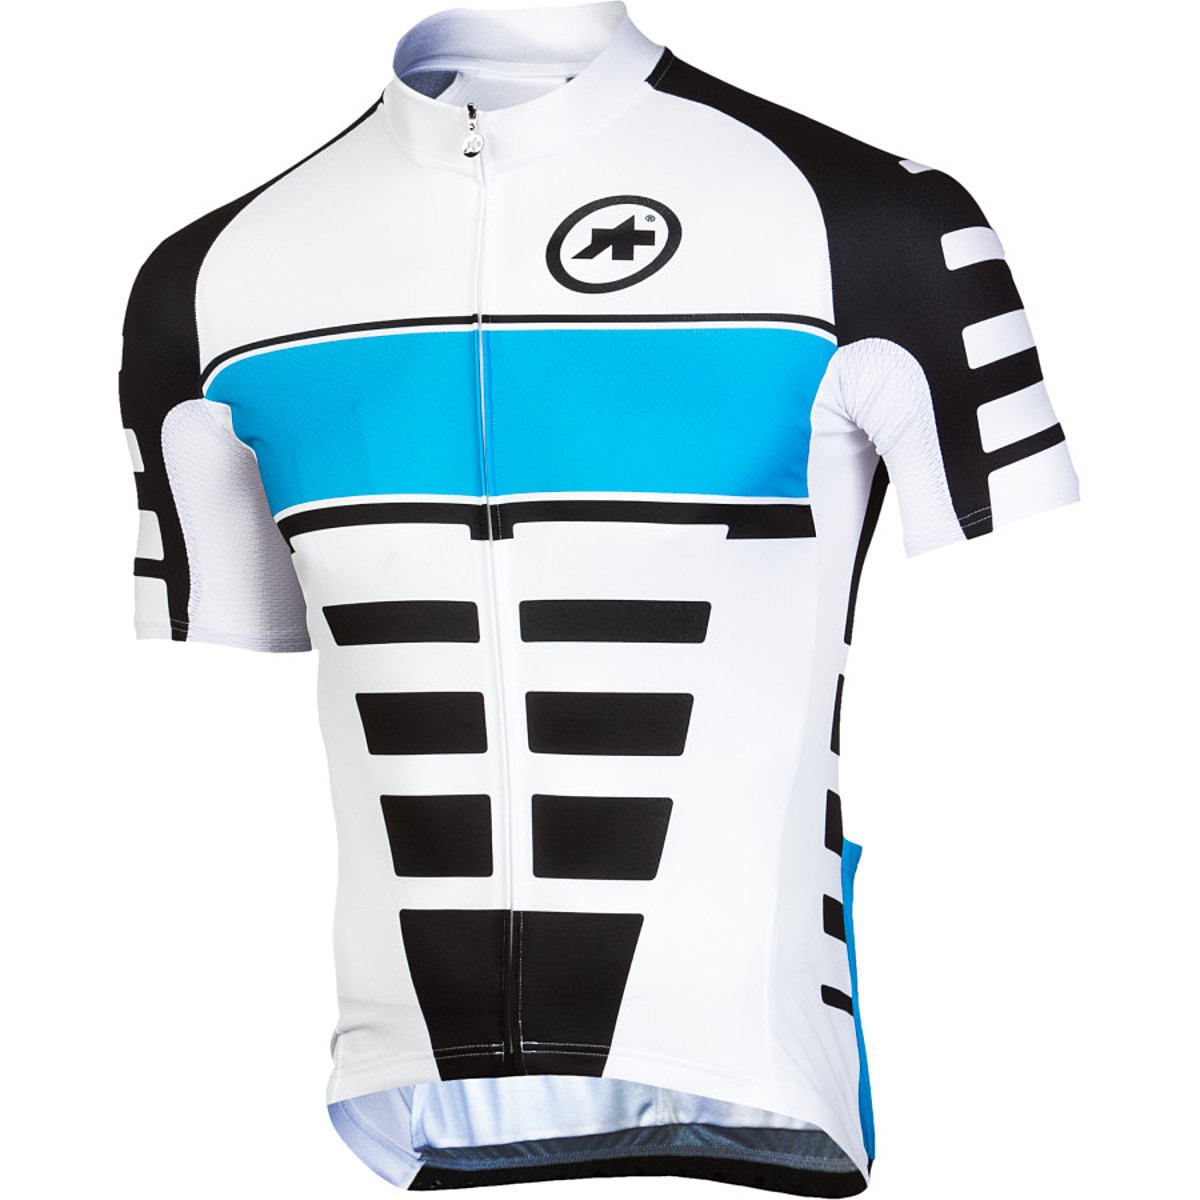 Vêtement cyclisme mixte - Ref 2220704 Image 3